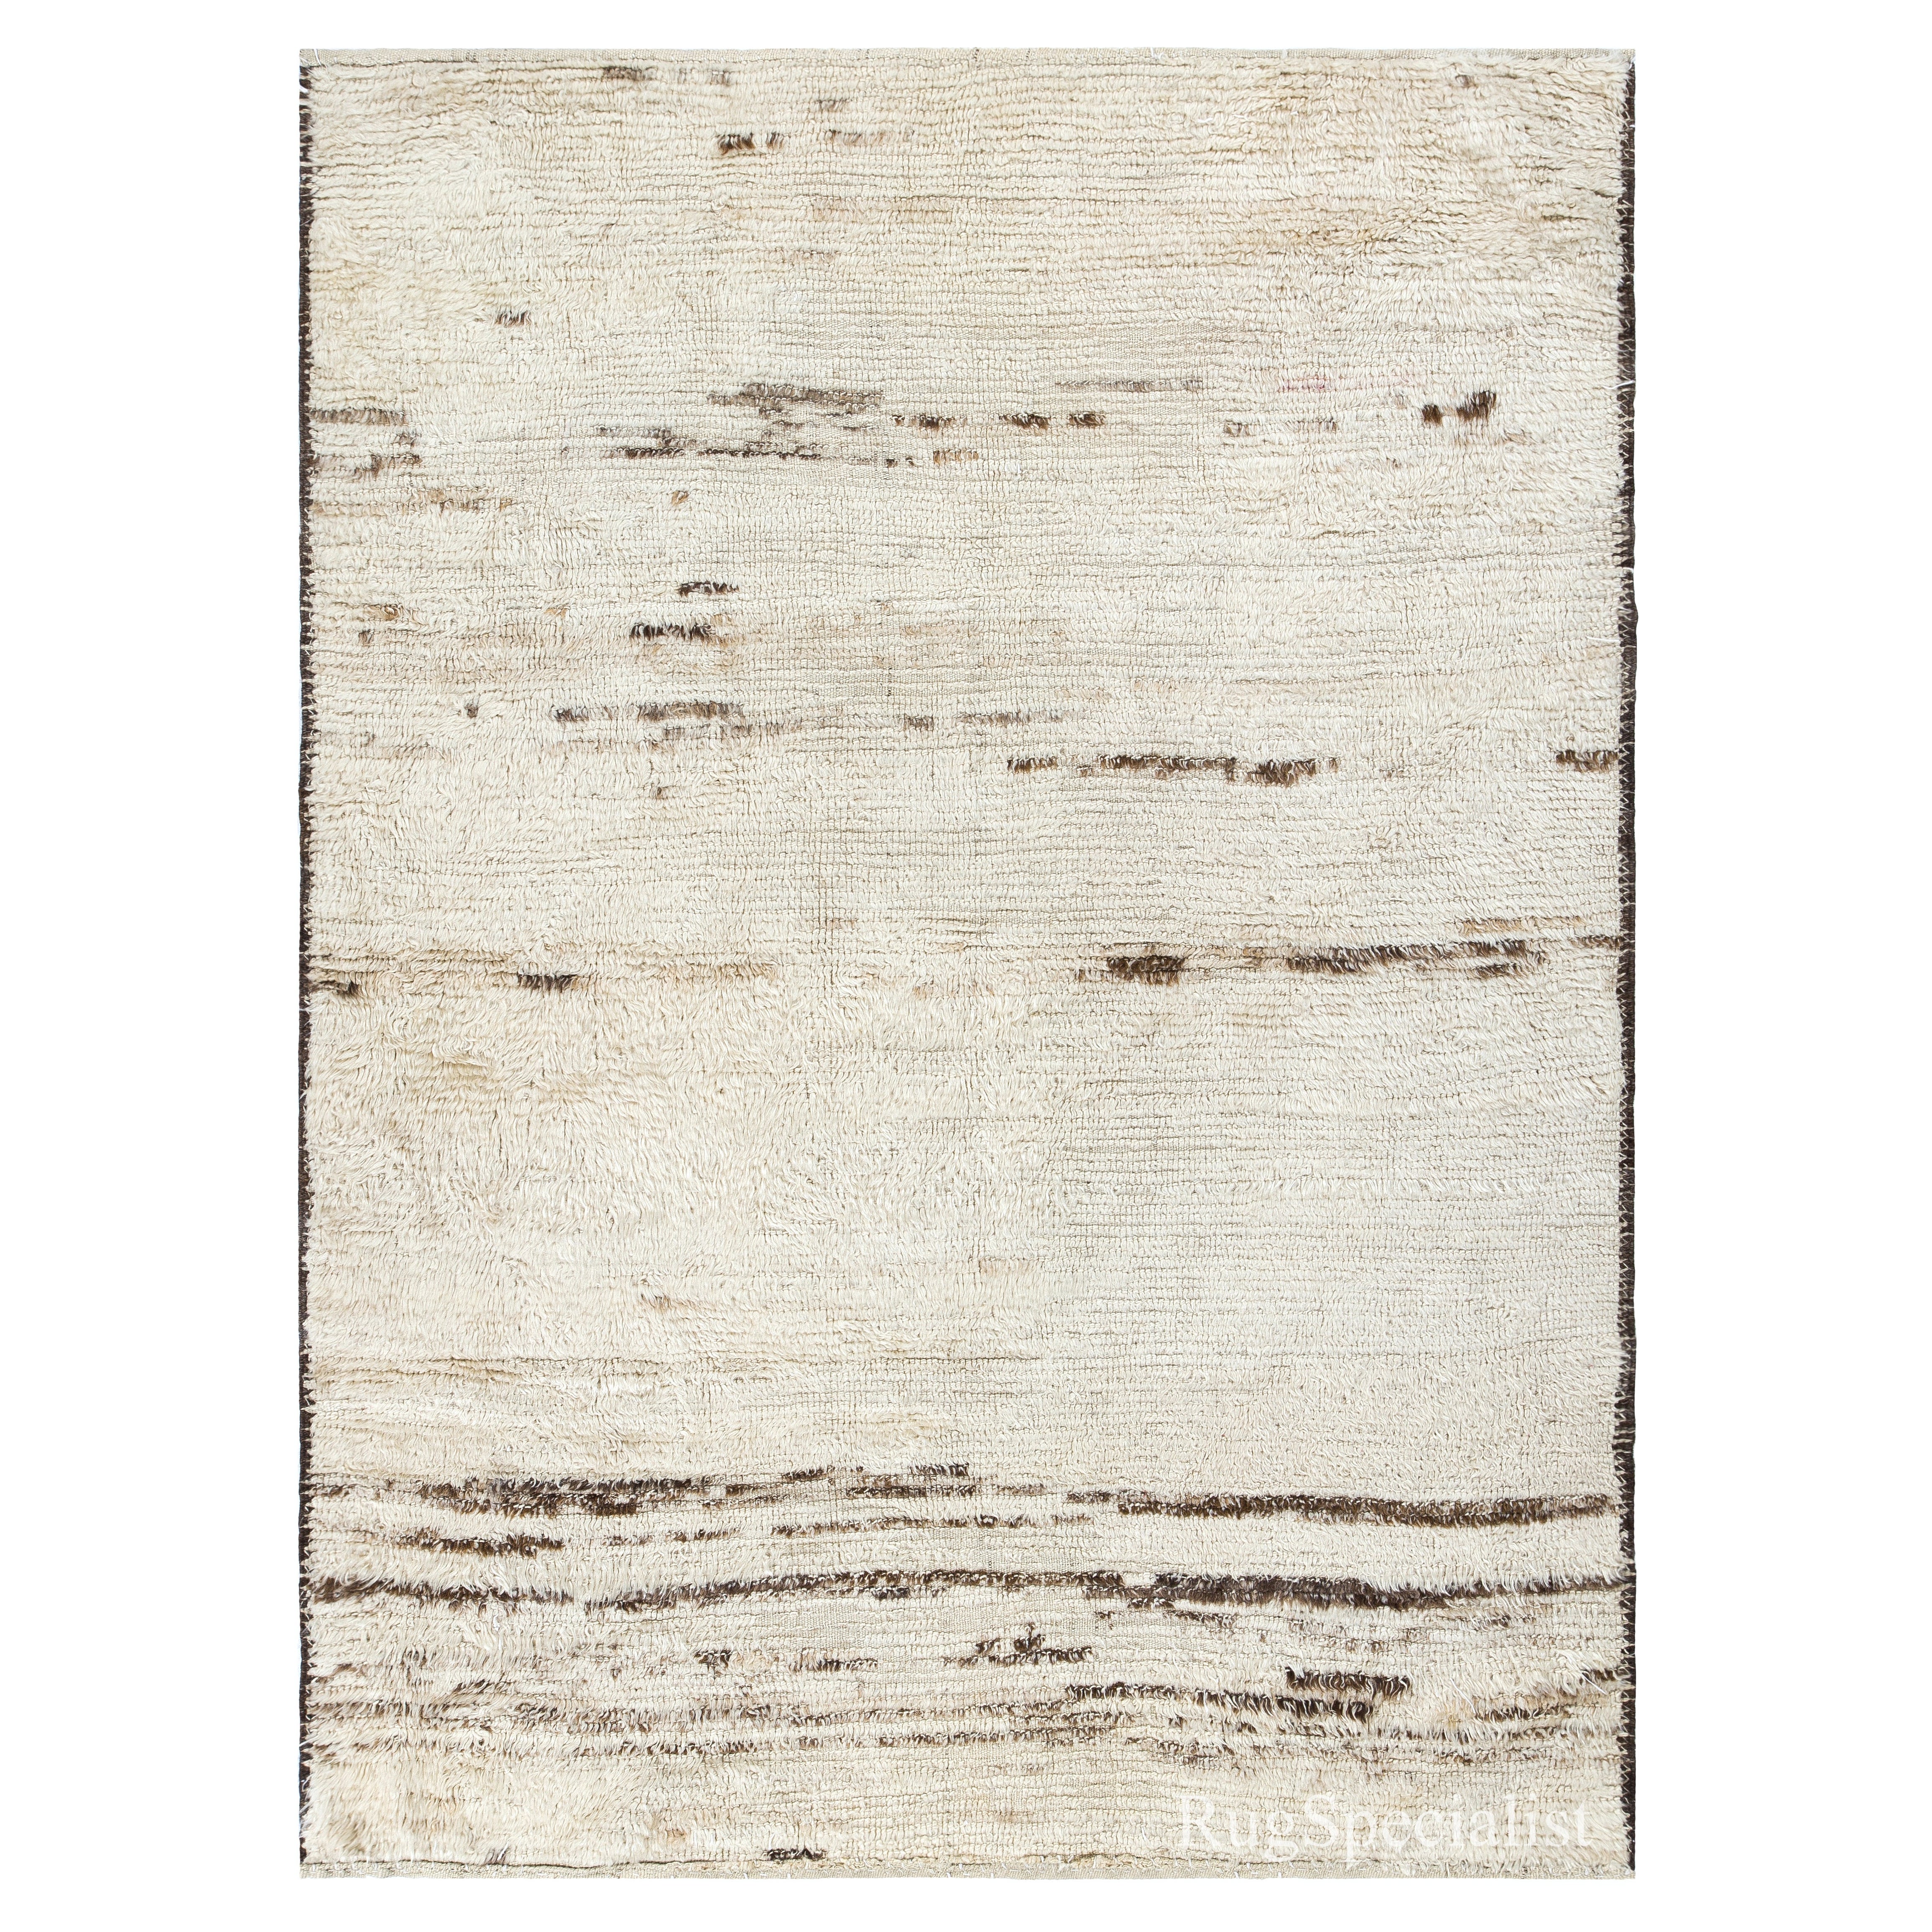 Handgefertigter türkischer Tulu-Teppich, 100 % natürliche, unbefärbte Wolle, moderner skandinavischer Teppich